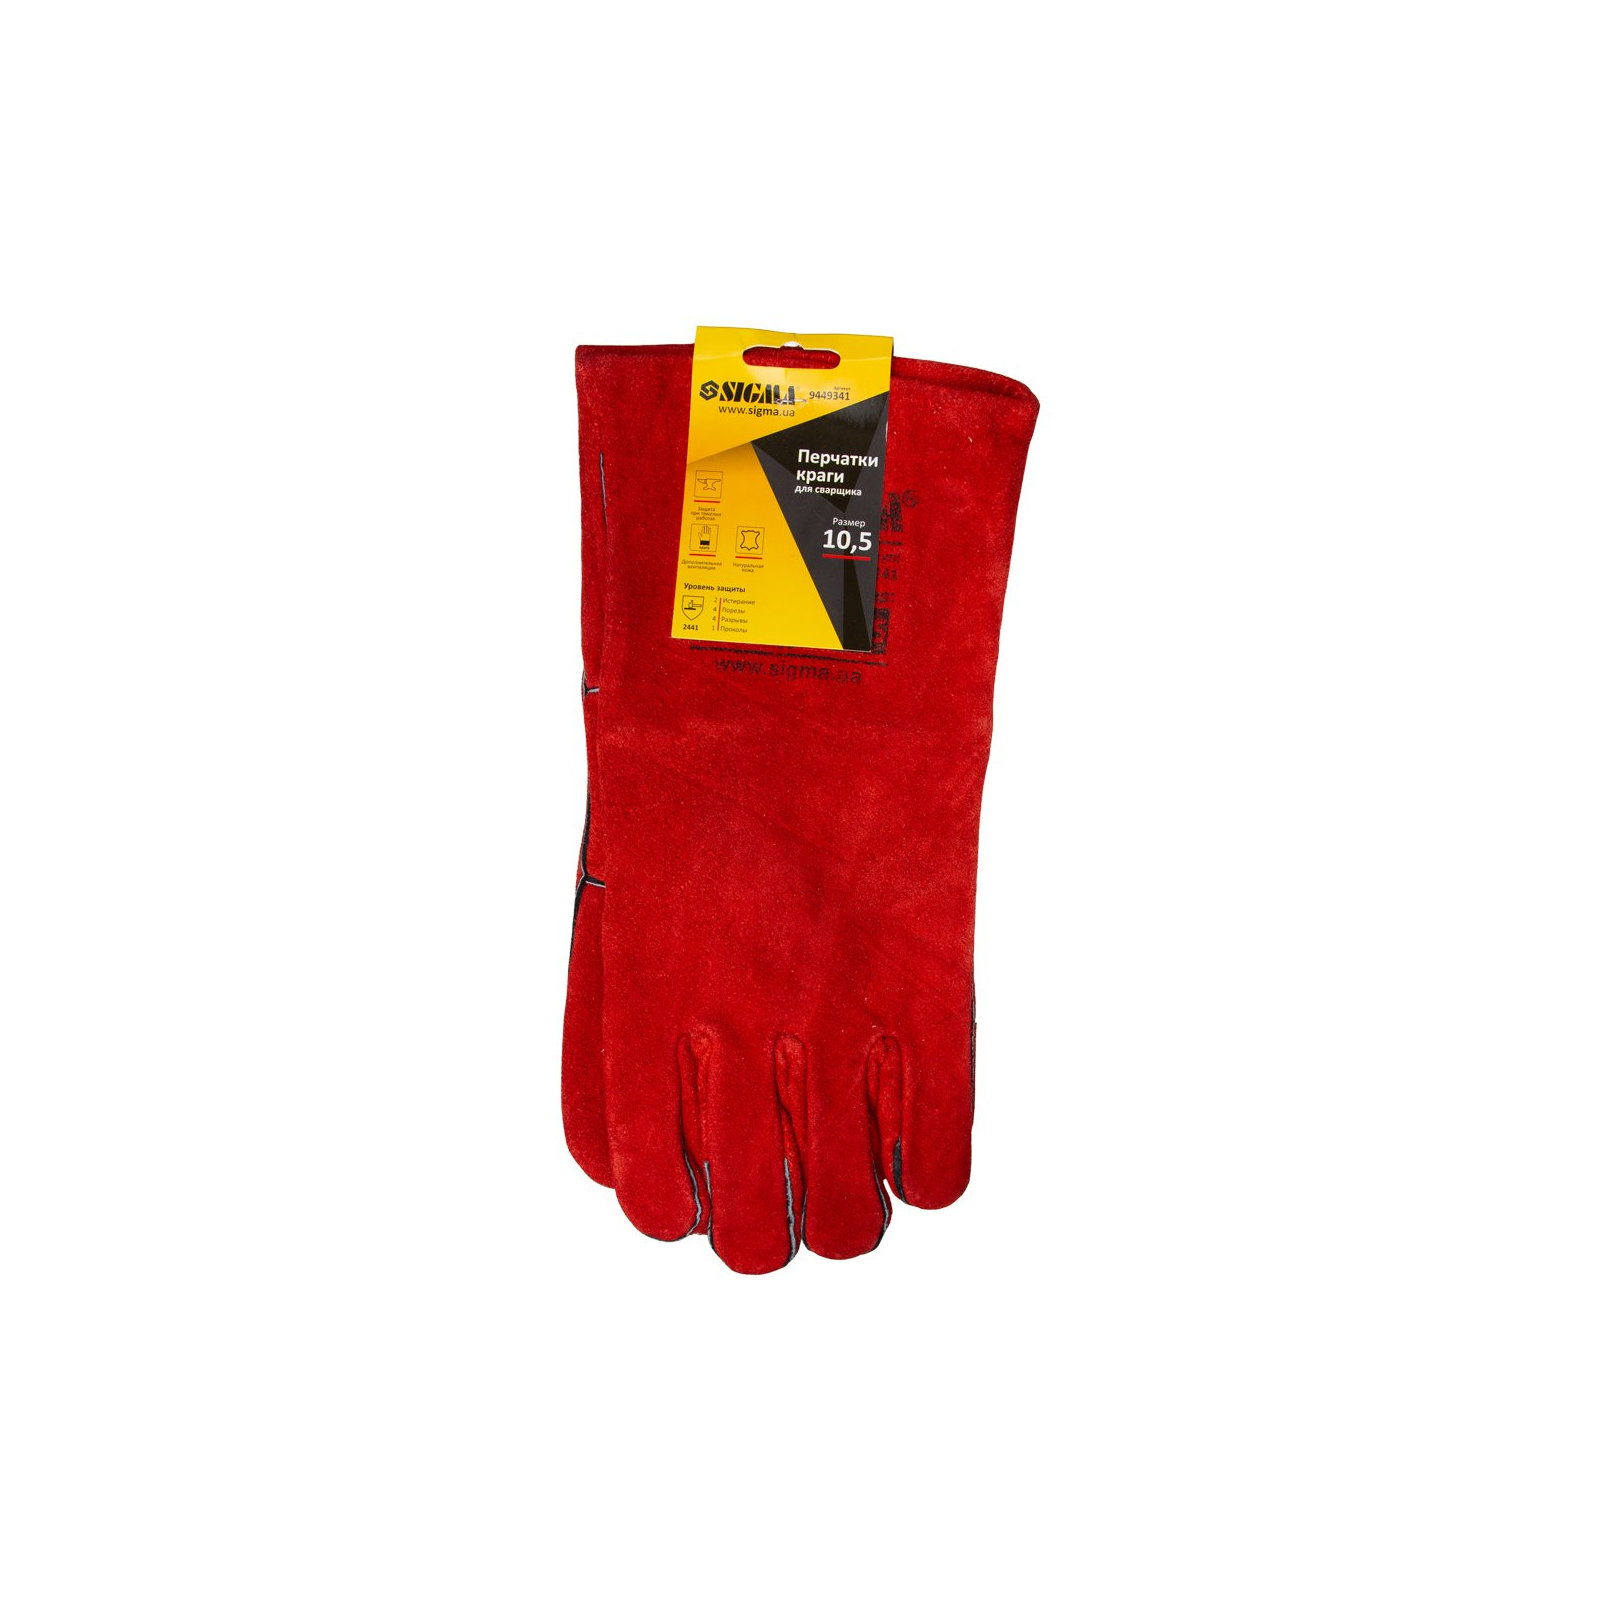 Защитные перчатки Sigma краги сварщика р10.5, класс АВ, длина 35см (красные) (9449341) изображение 4